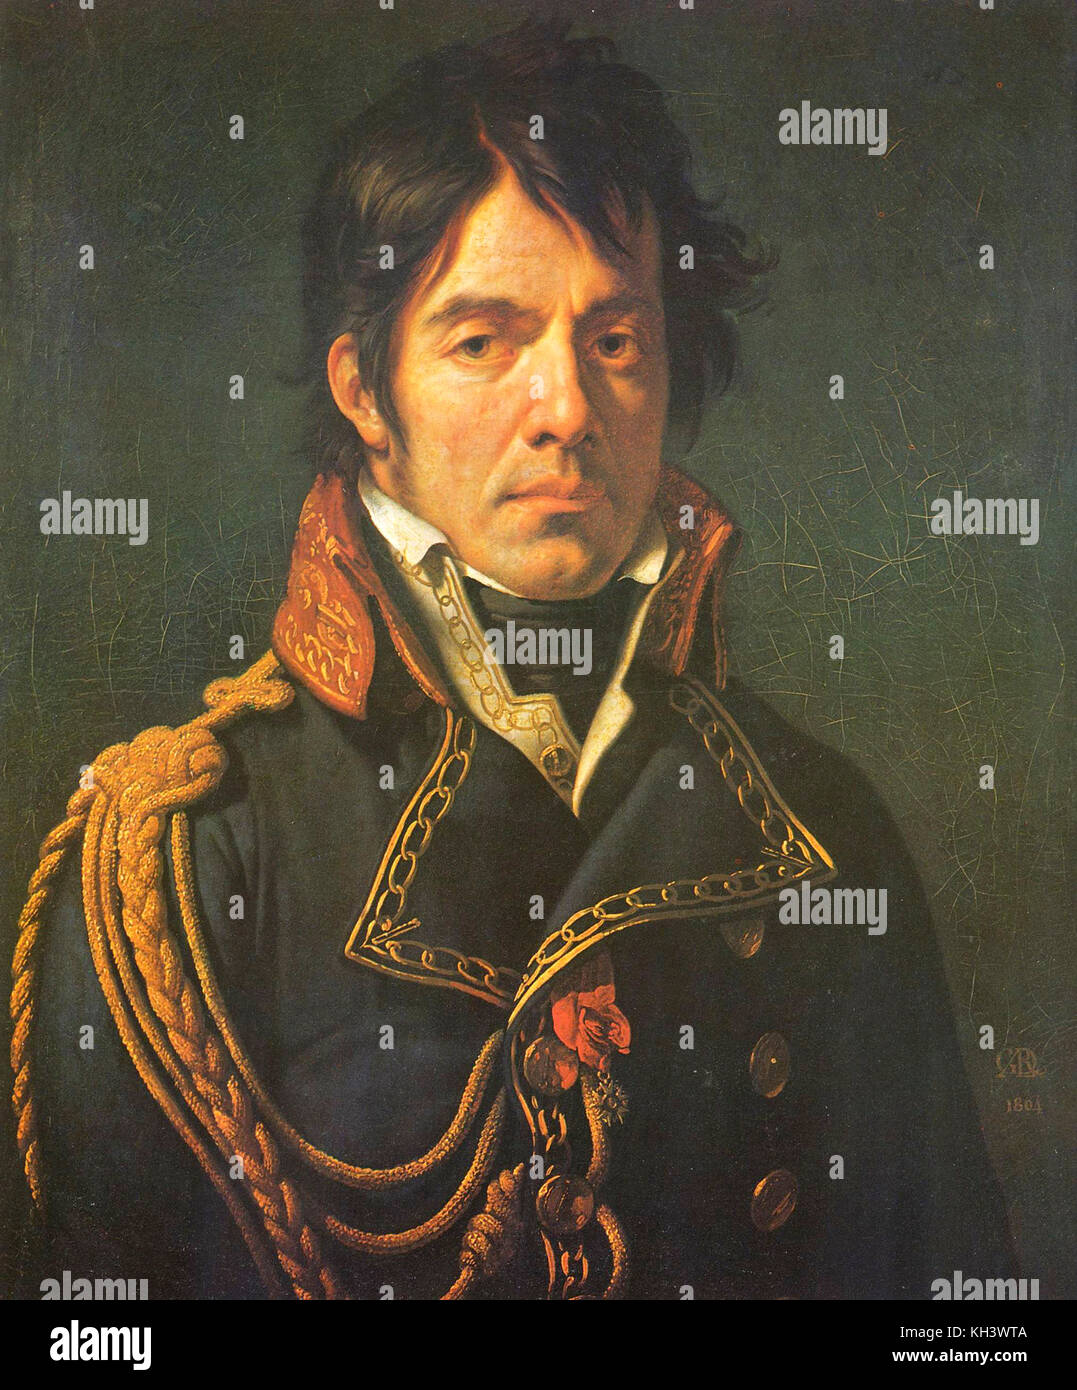 Dominique Jean larrey, französischer Chirurg in der Grande Armée Napoleons und ein wichtiger Innovator in Battlefield Medizin und Triage. Stockfoto